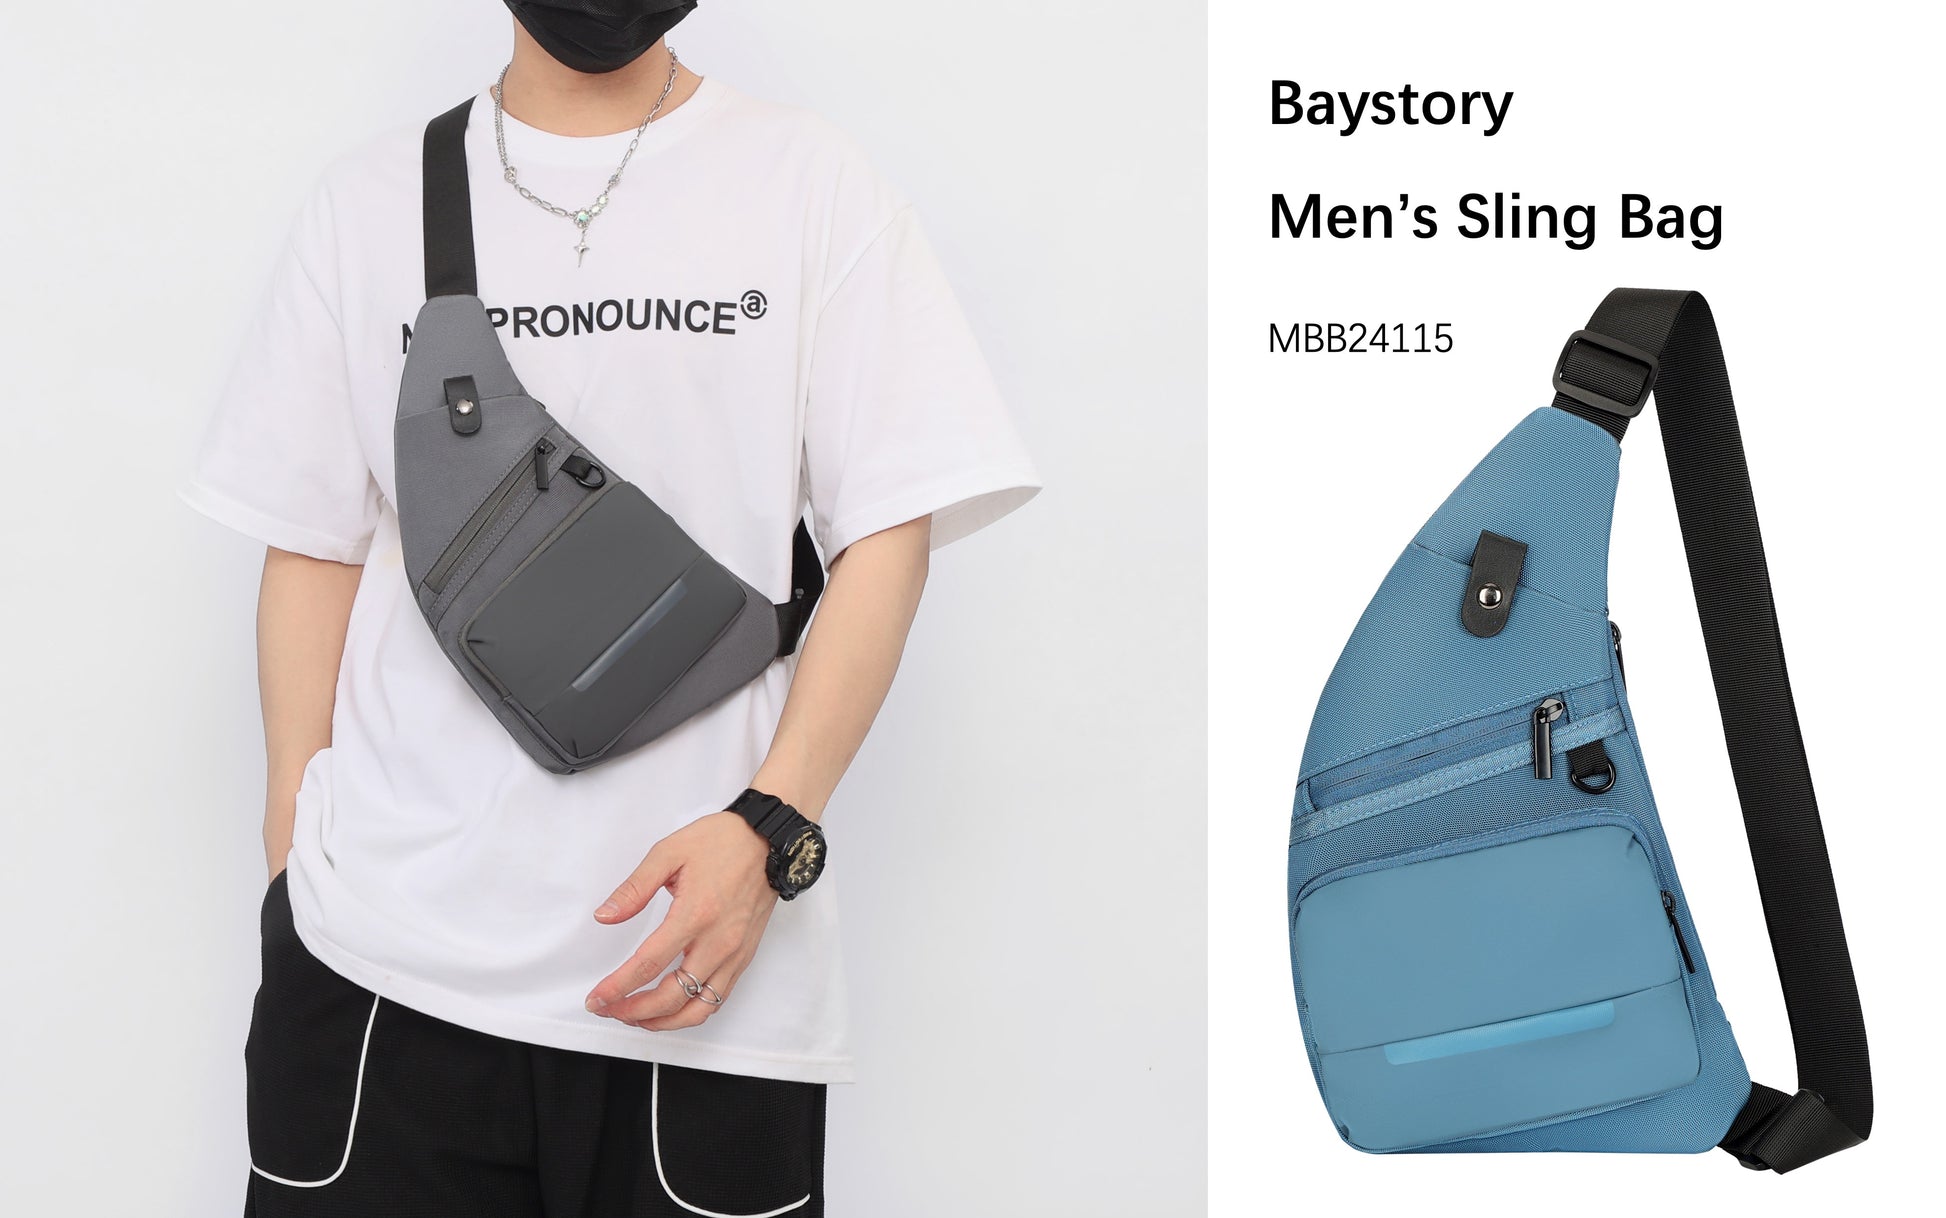 Baystory Men’s Sling Bag MBB24115 - Baystory